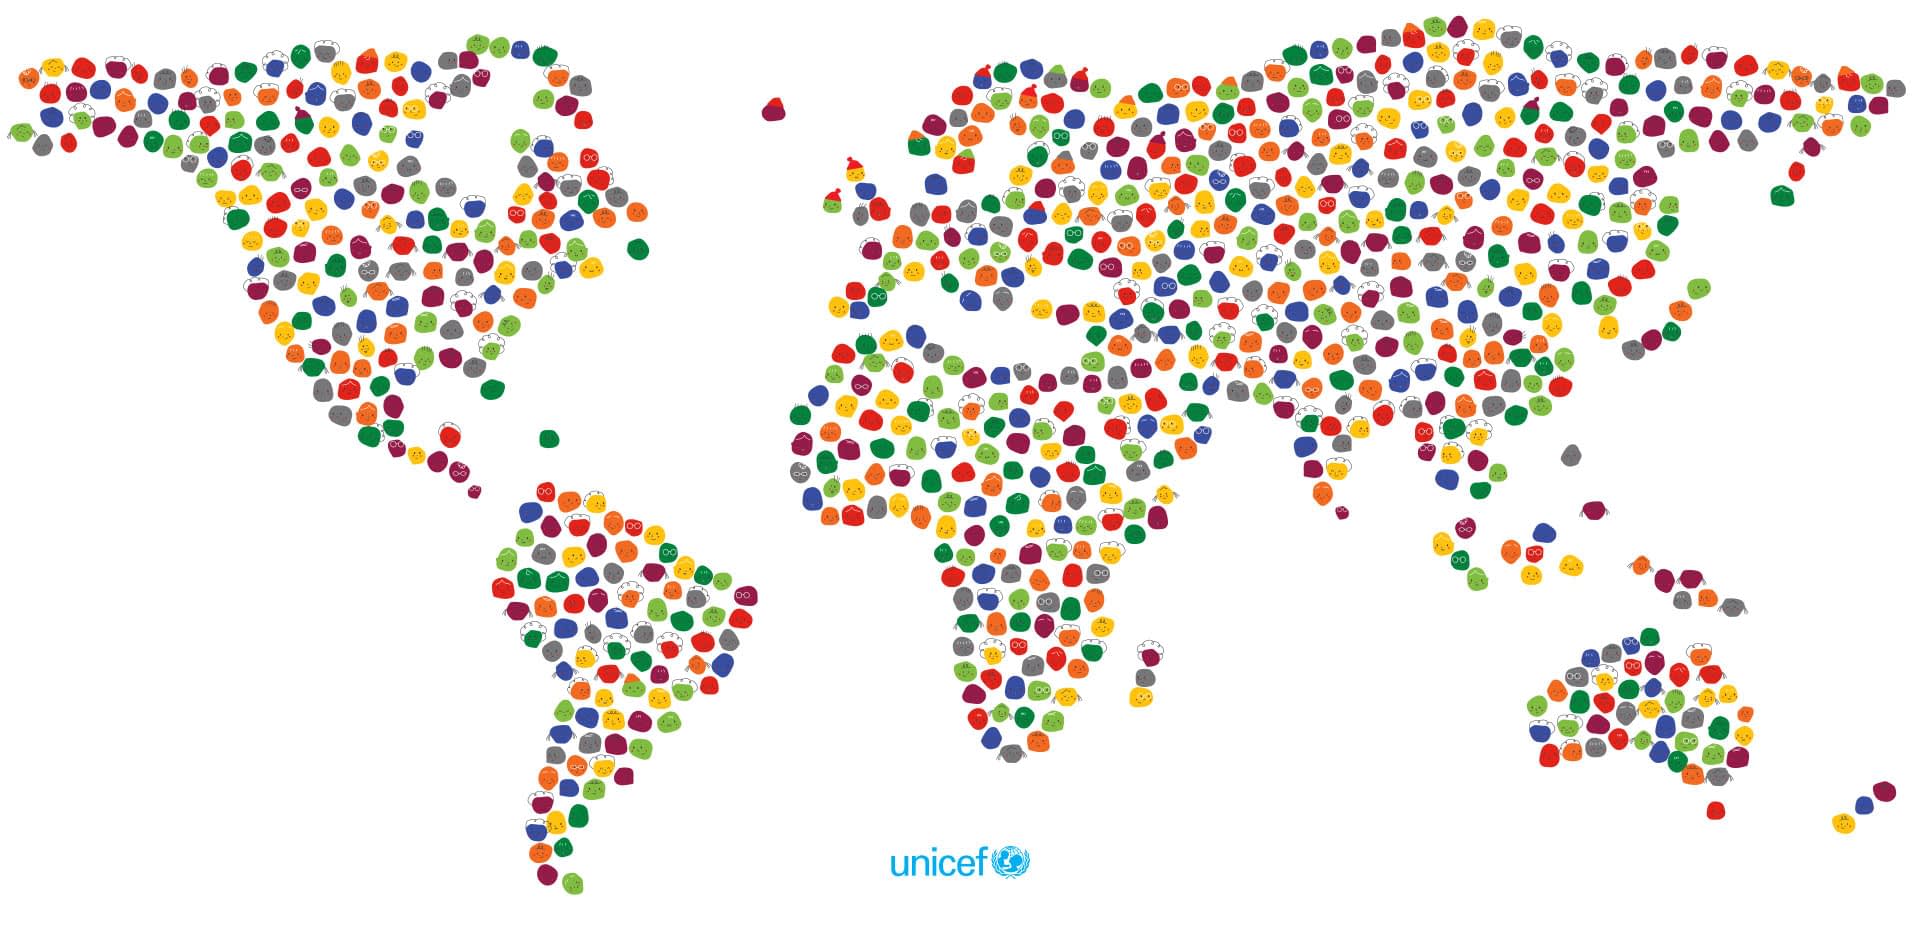 Unicef world map